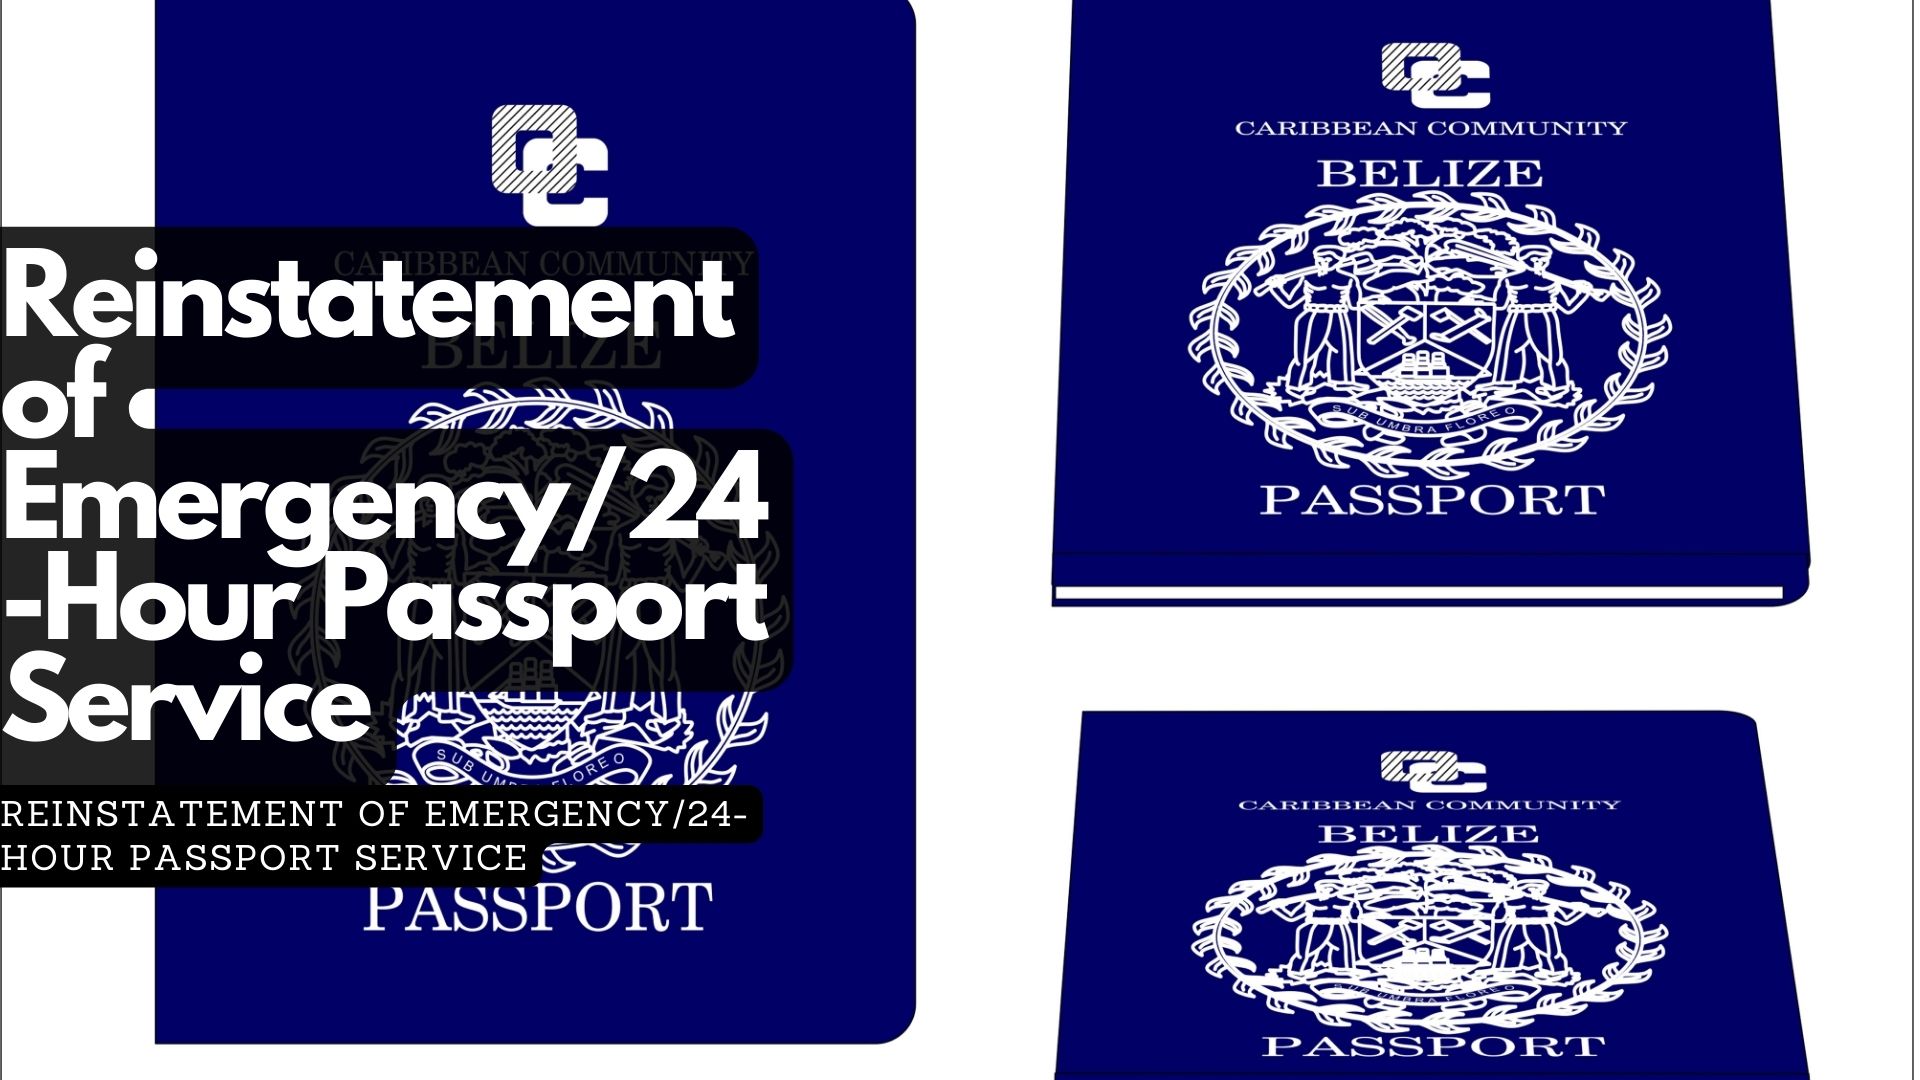 Reinstatement of Emergency/24-Hour Passport Service